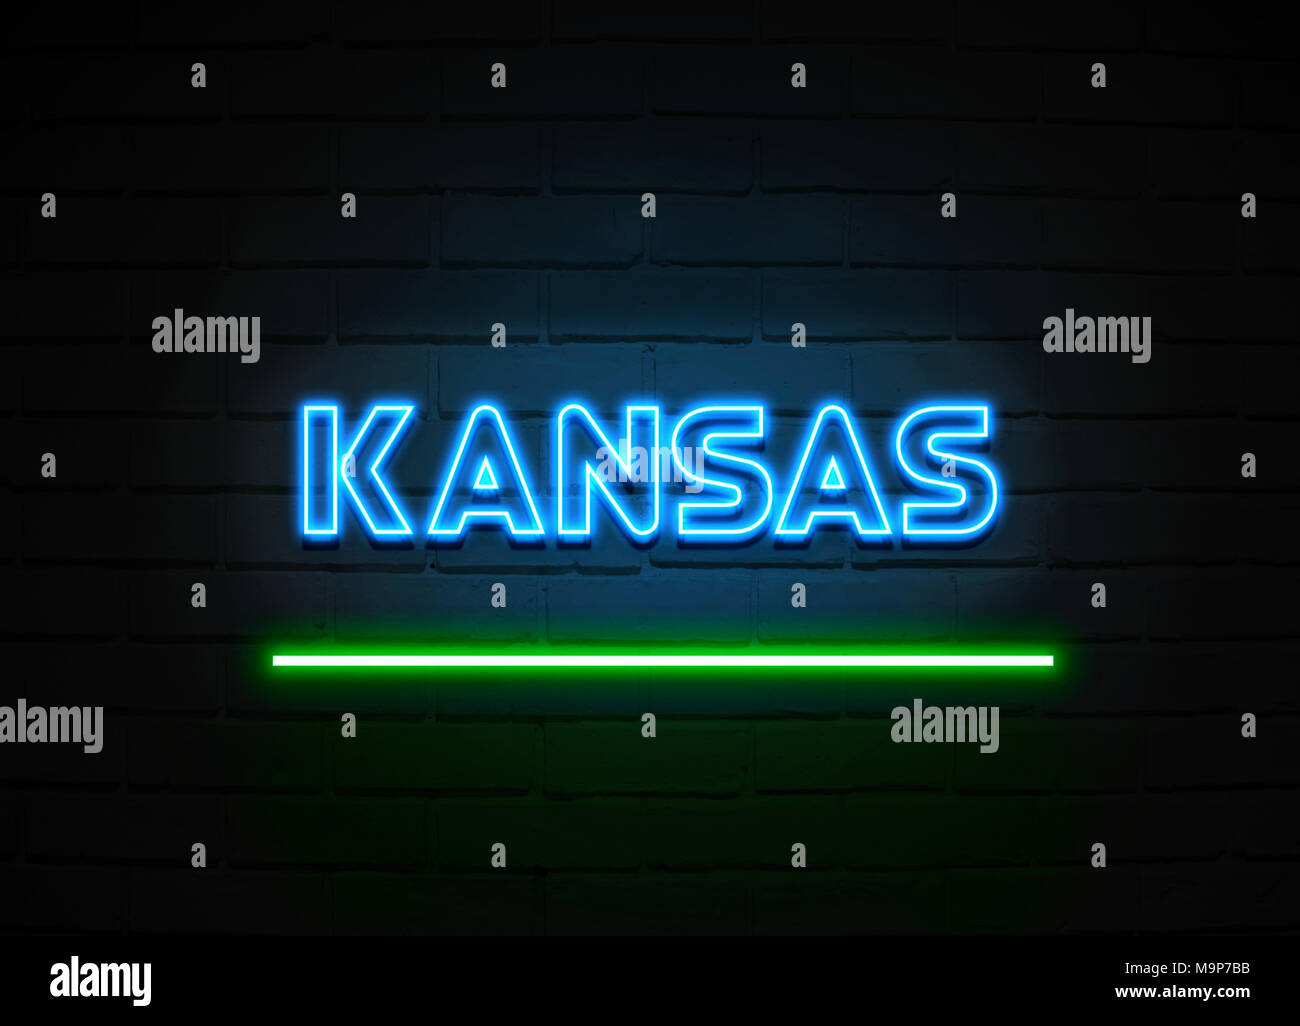 Kansas Leuchtreklame - glühende Leuchtreklame auf brickwall Wand - 3D-Royalty Free Stock Illustration dargestellt. Stockfoto